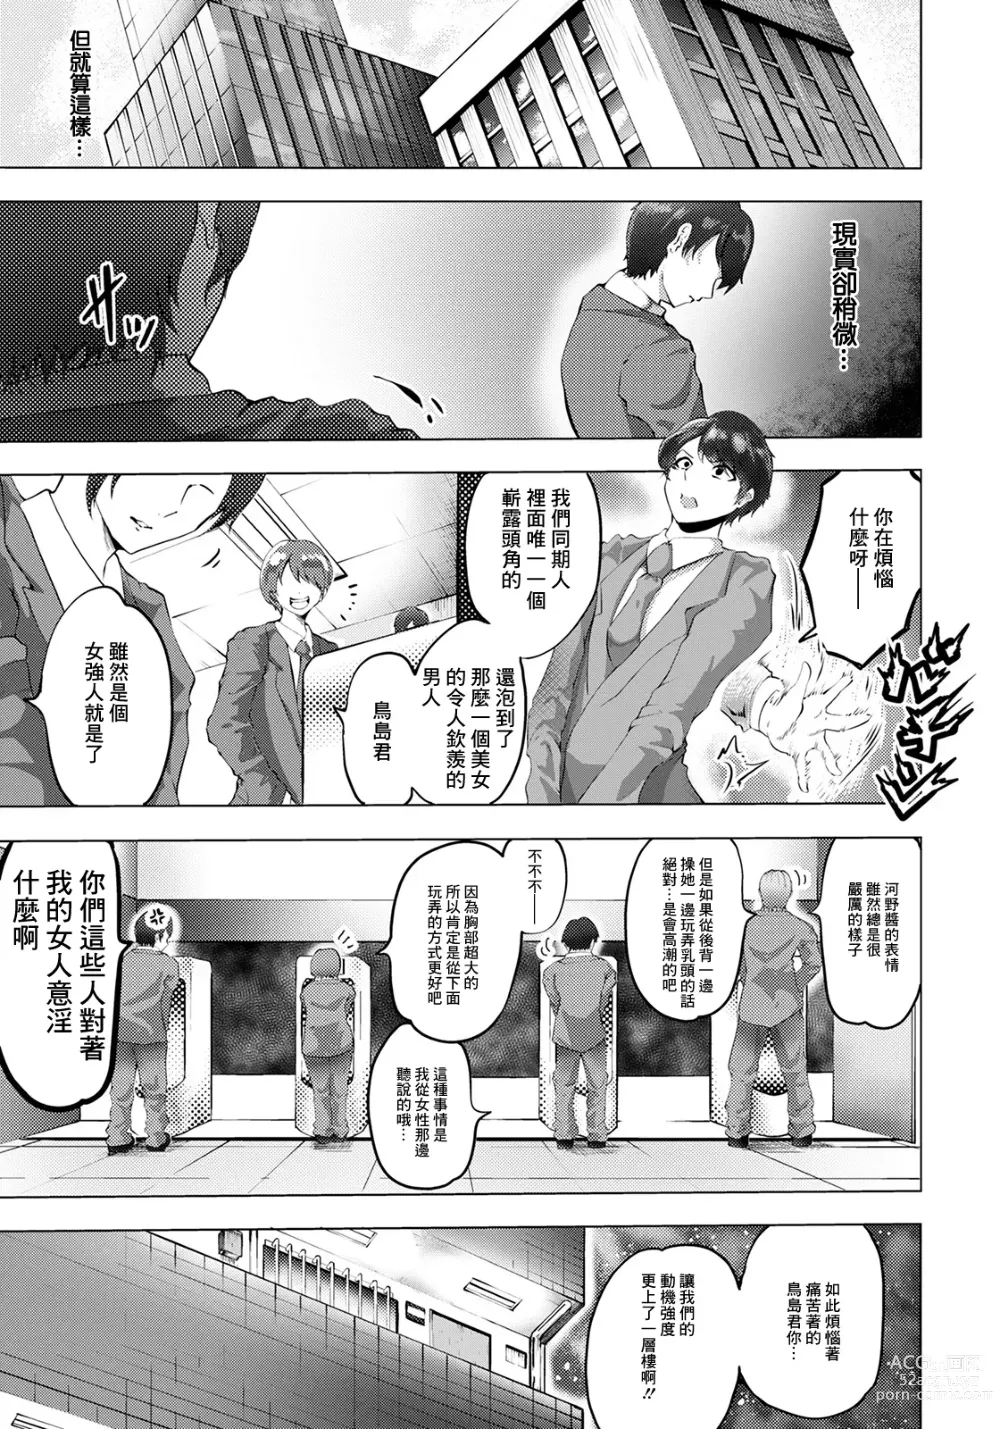 Page 5 of manga Netorare no  Nomikai